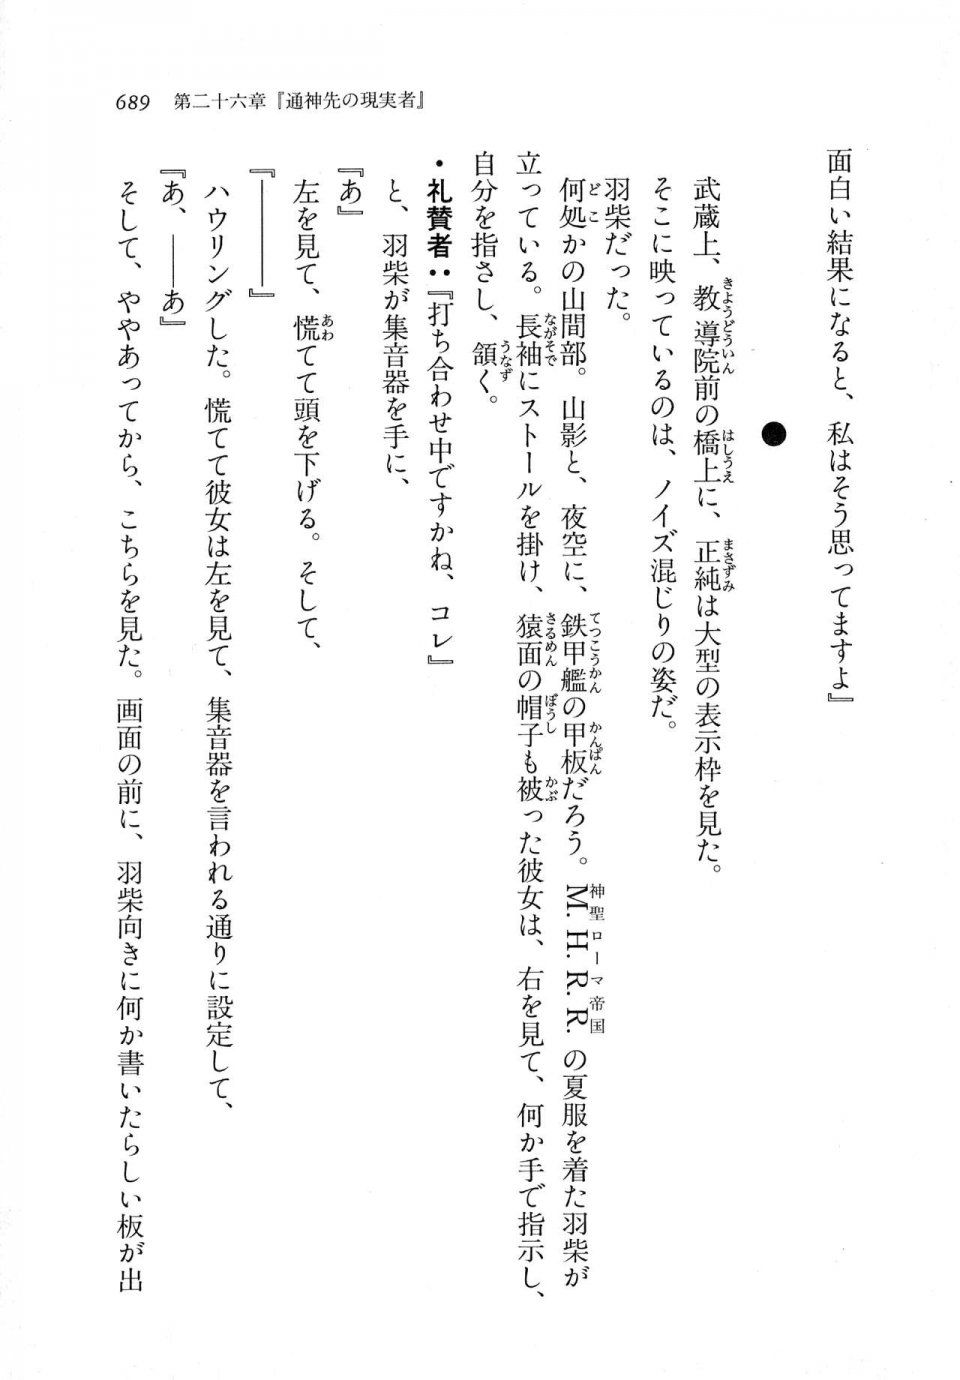 Kyoukai Senjou no Horizon LN Vol 11(5A) - Photo #689